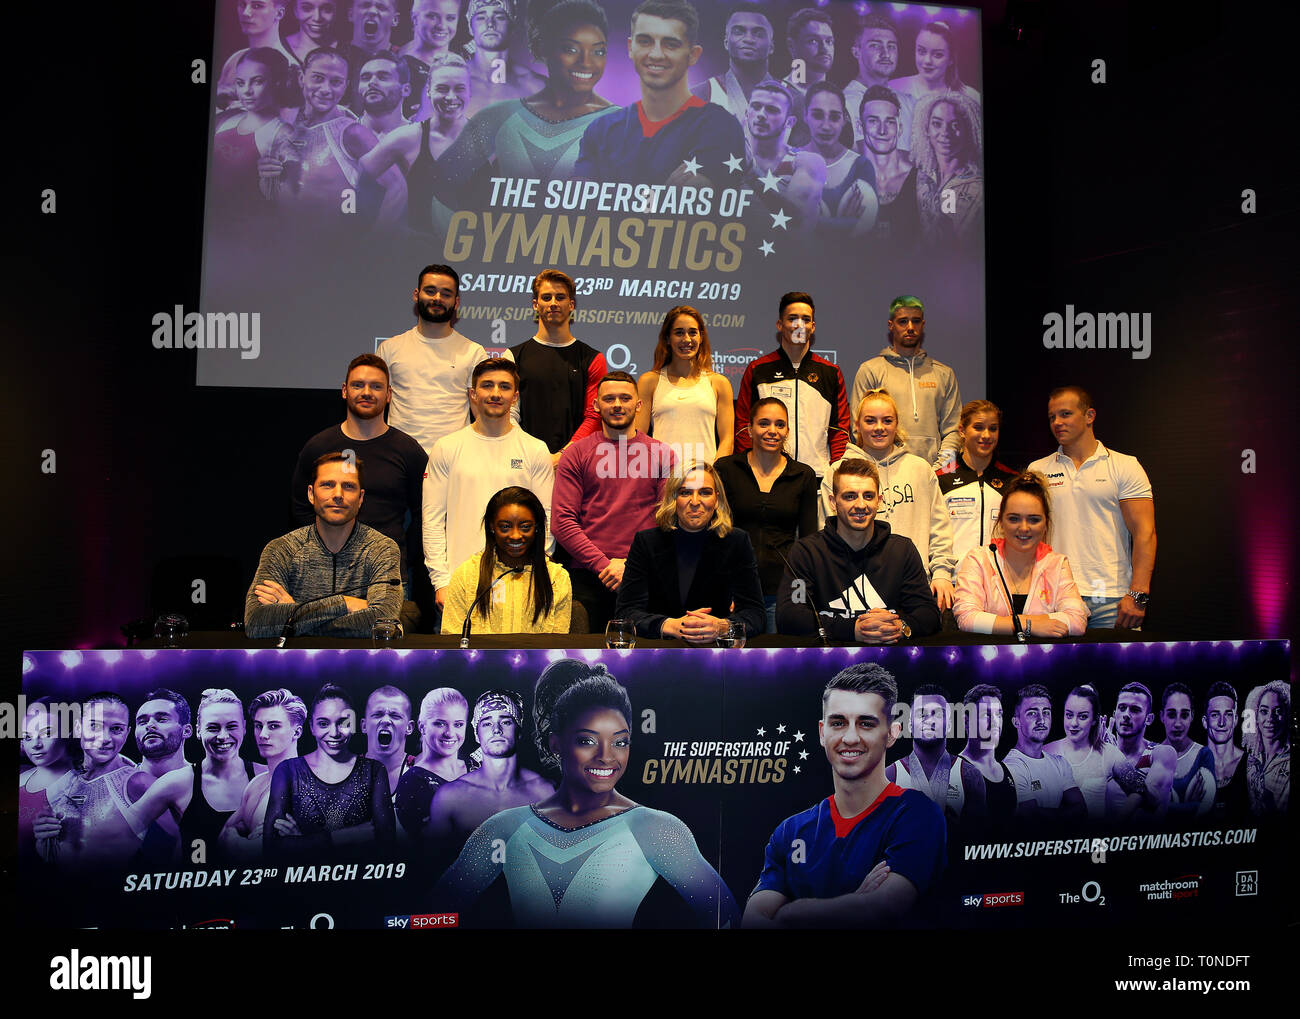 Emily Frazer von Matchroom wirft mit der Richter und die Superstars der Gymnastik während der Pressekonferenz in der Crystal, London. Stockfoto